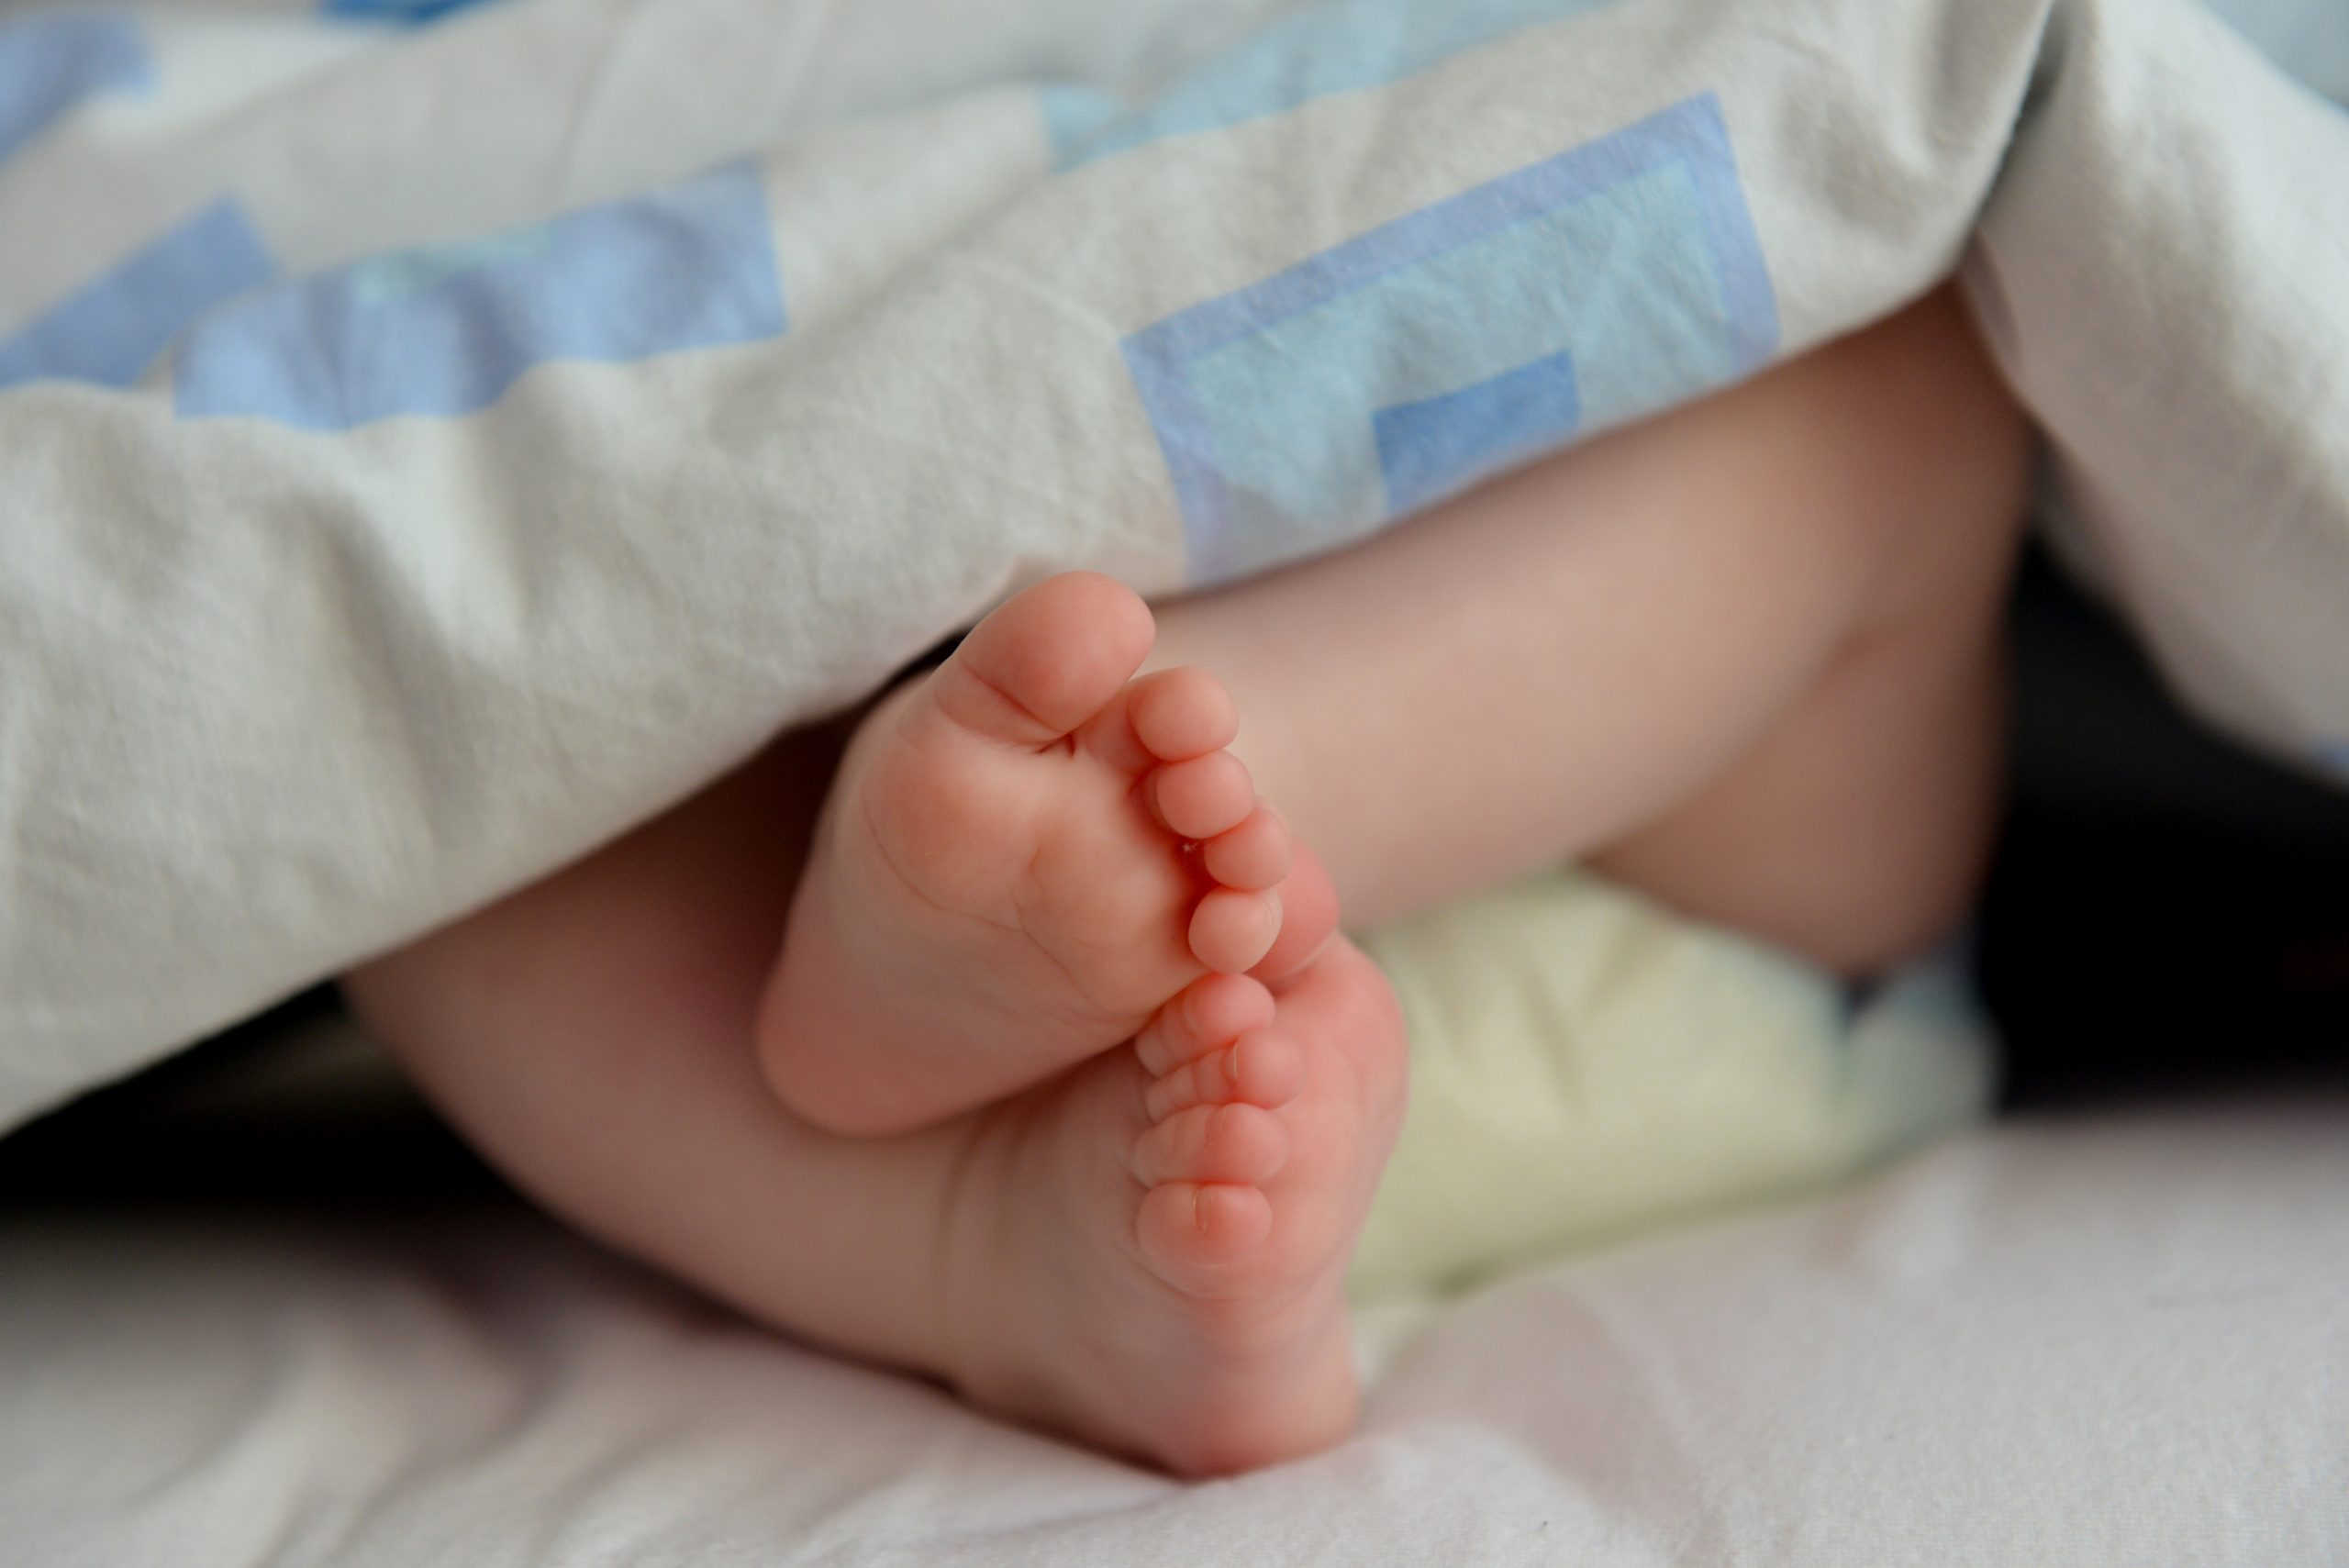 Babyfüße gucken unter eine Decke hervor.